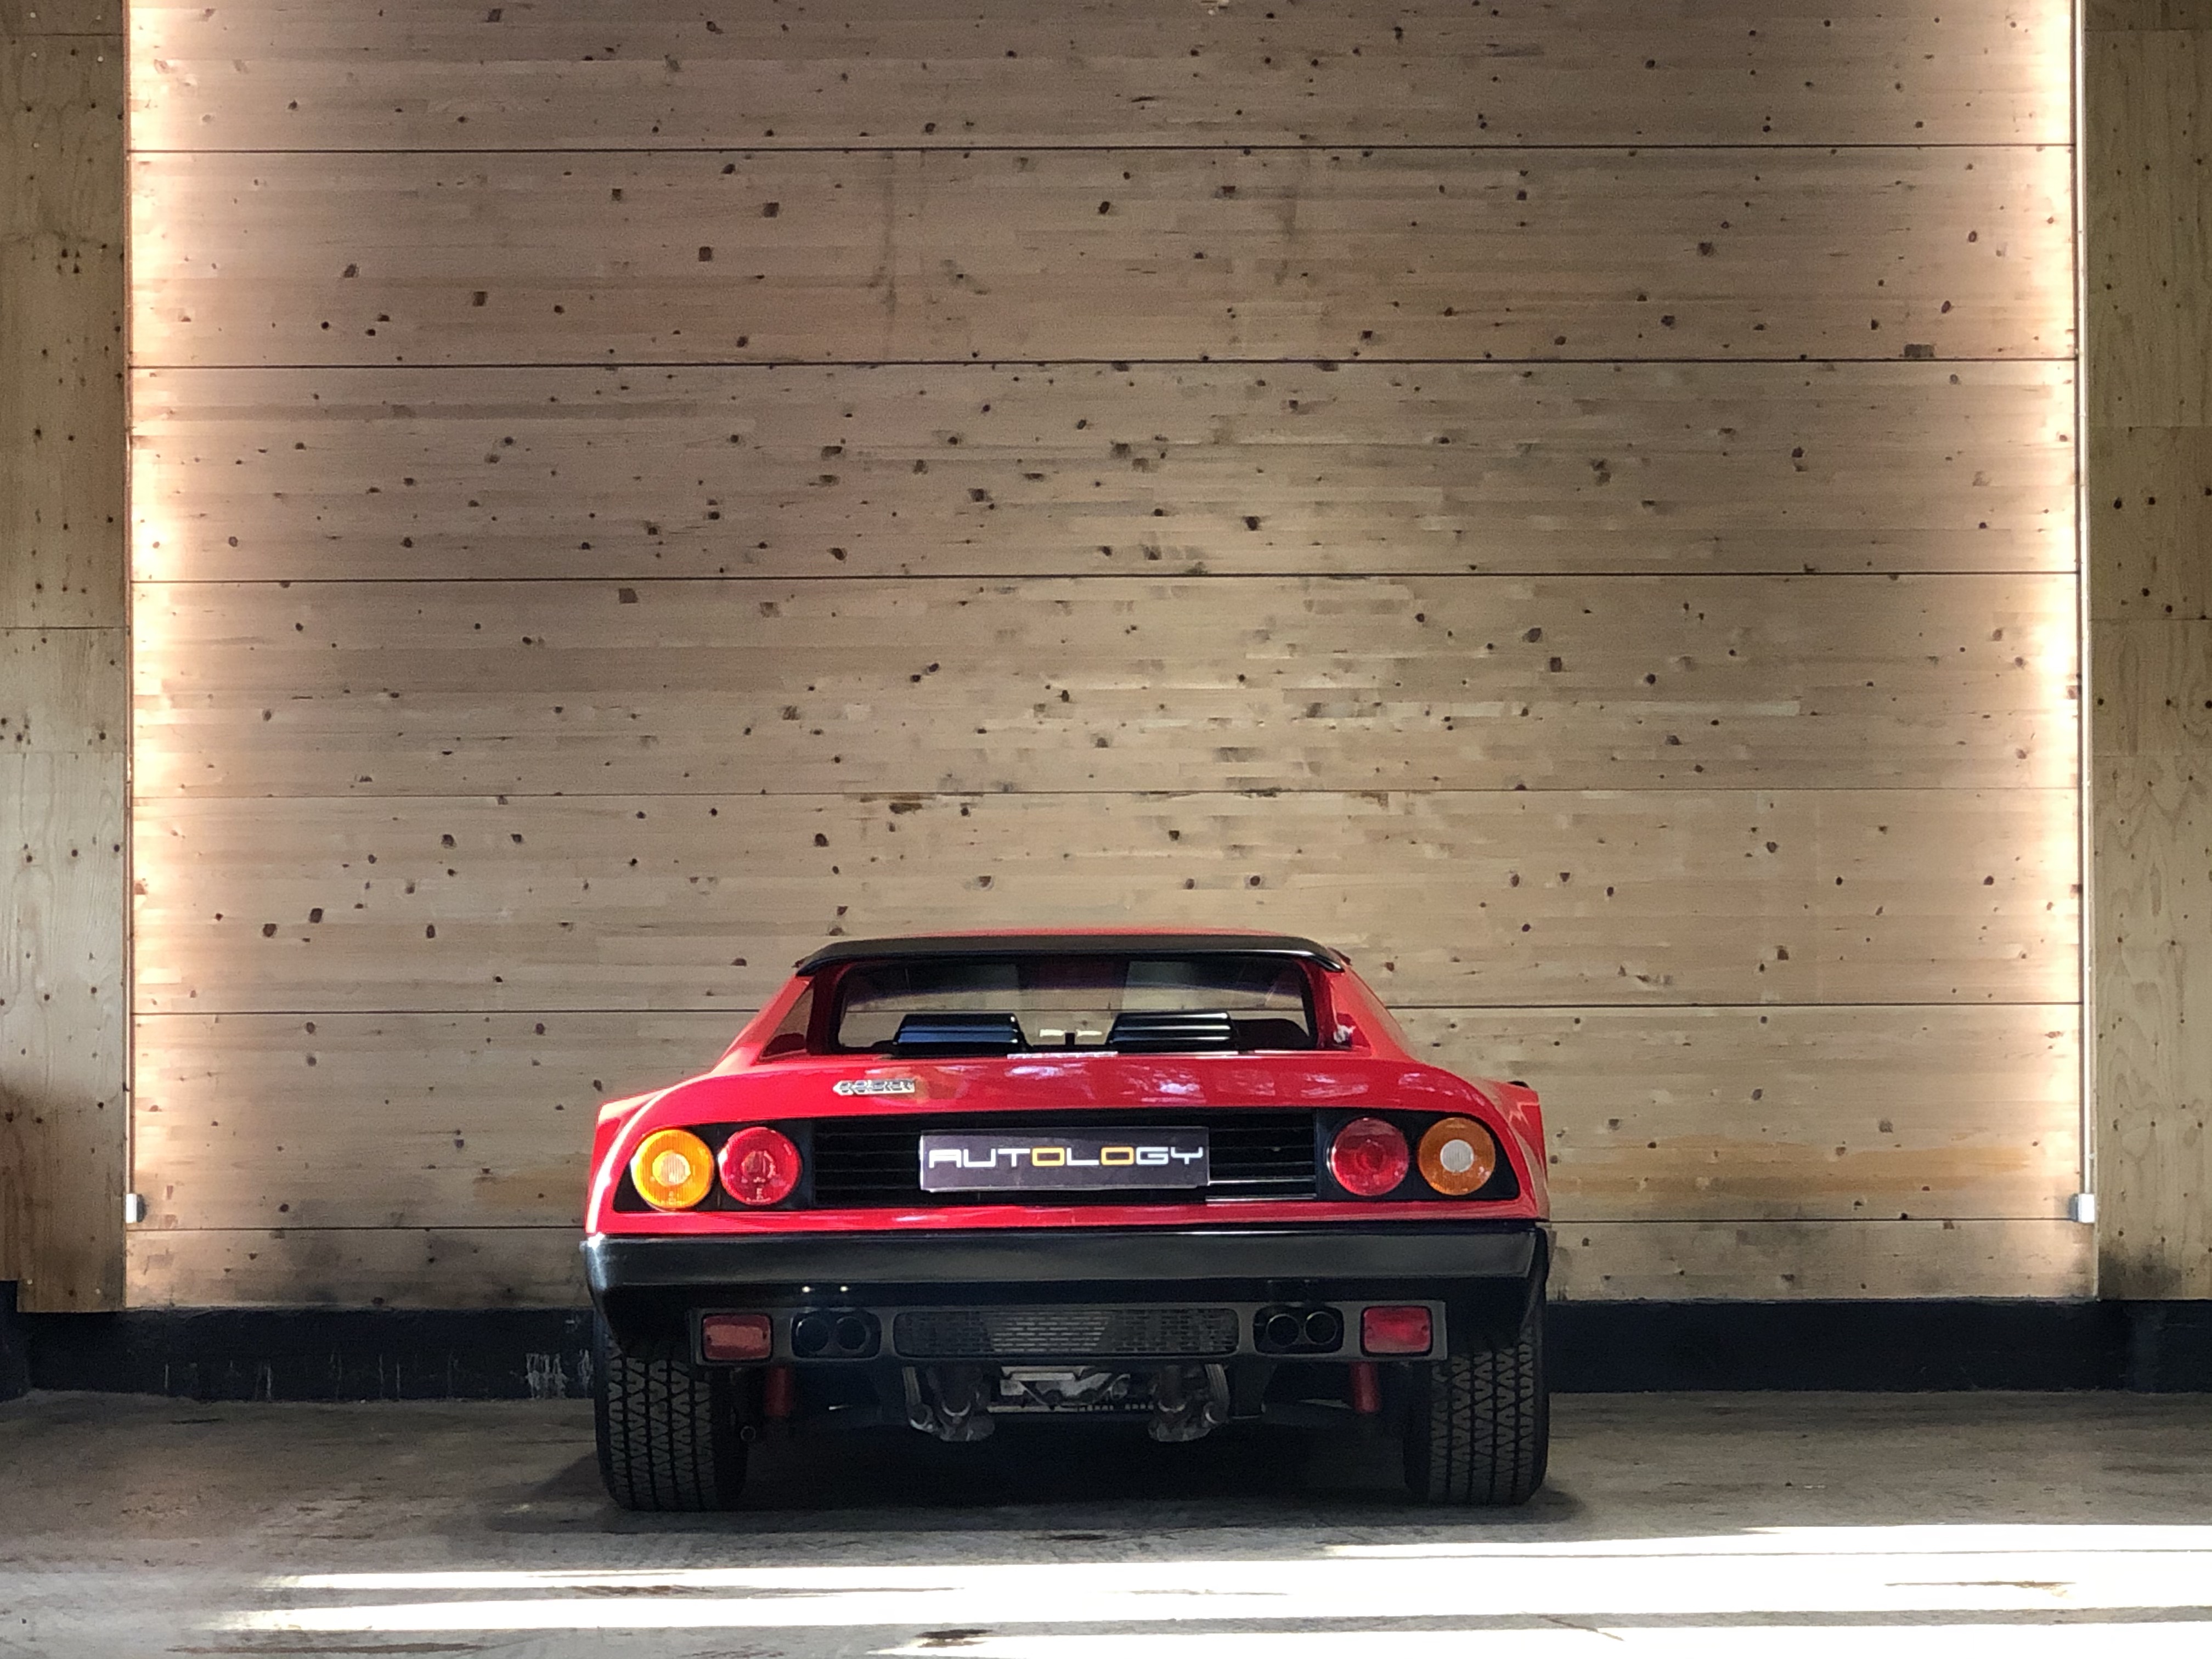 Ferrari 512 BBi